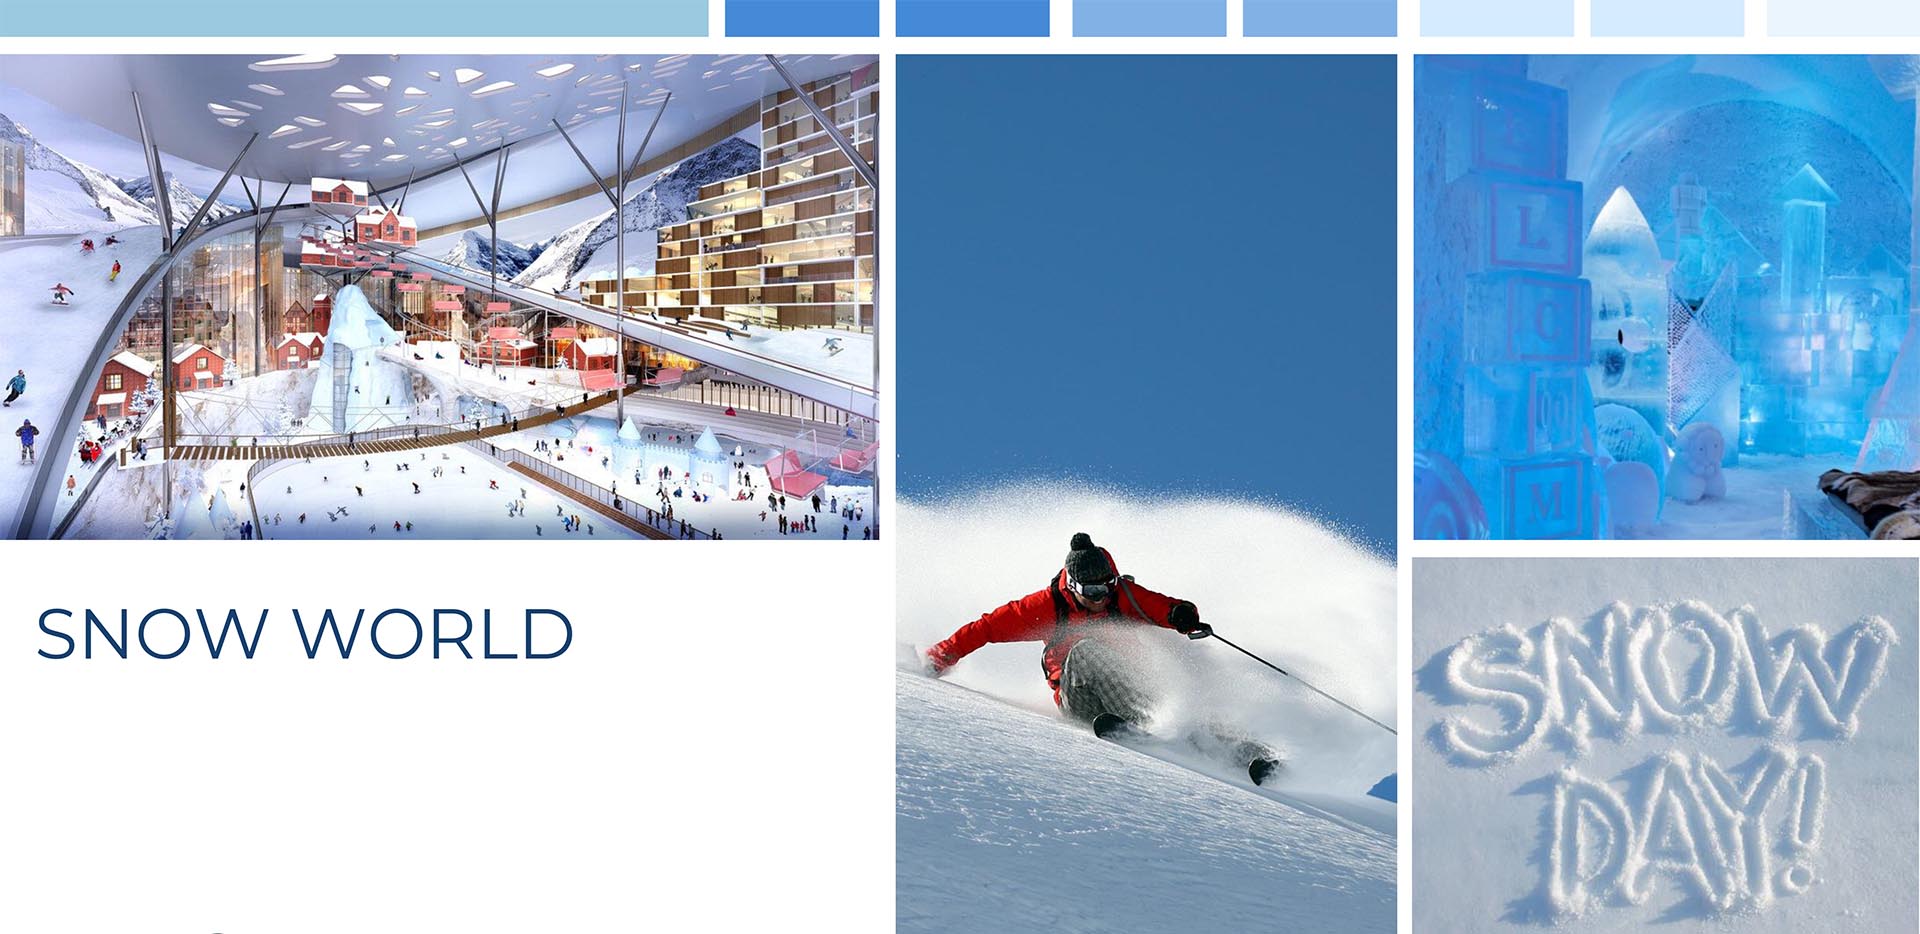 Snow World - Sân trượt tuyết trong nhà